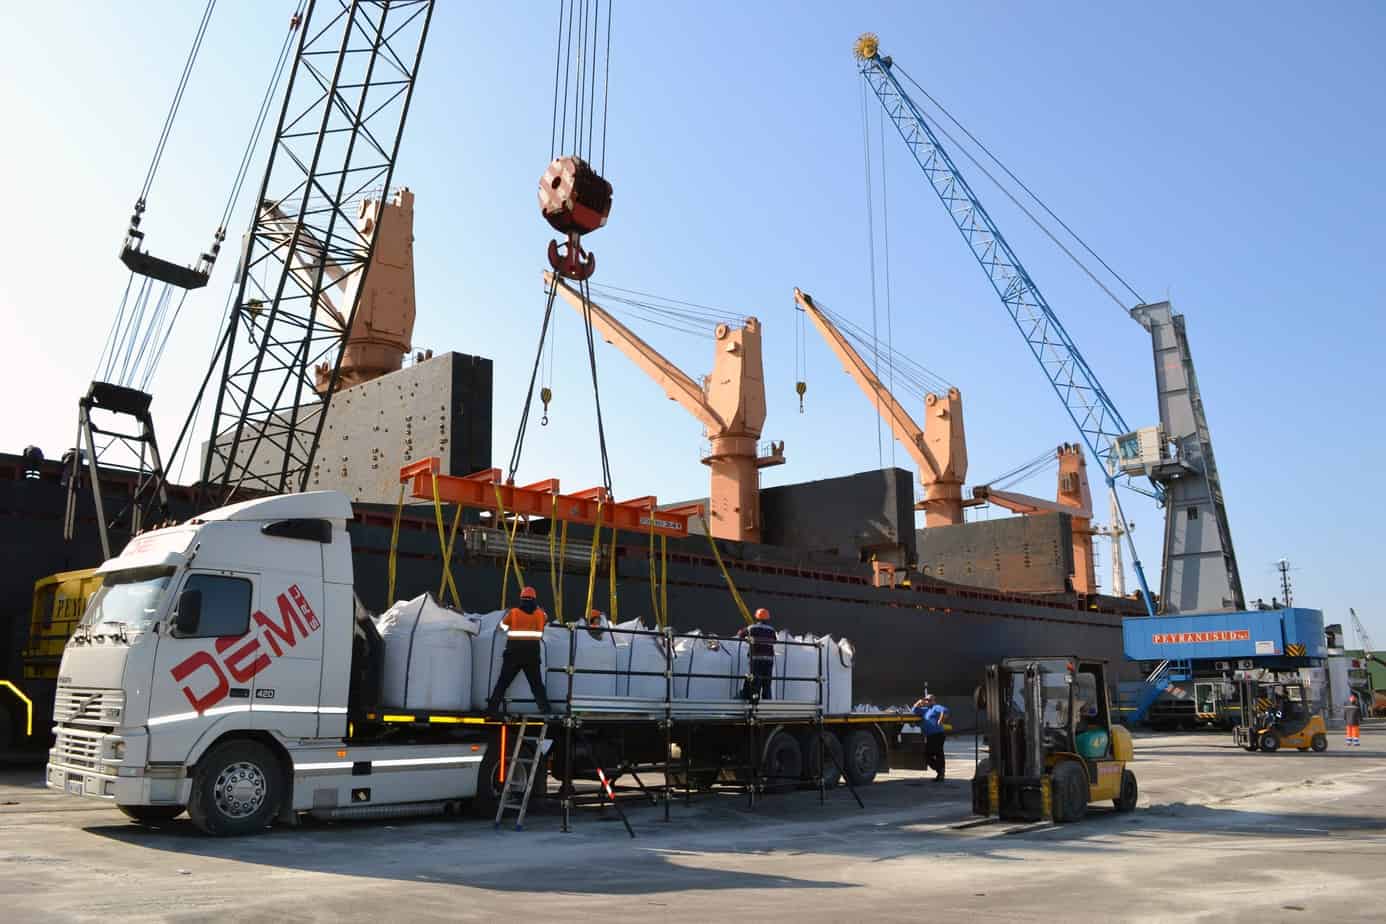 La movimentazione di merci industriali al porto di Taranto